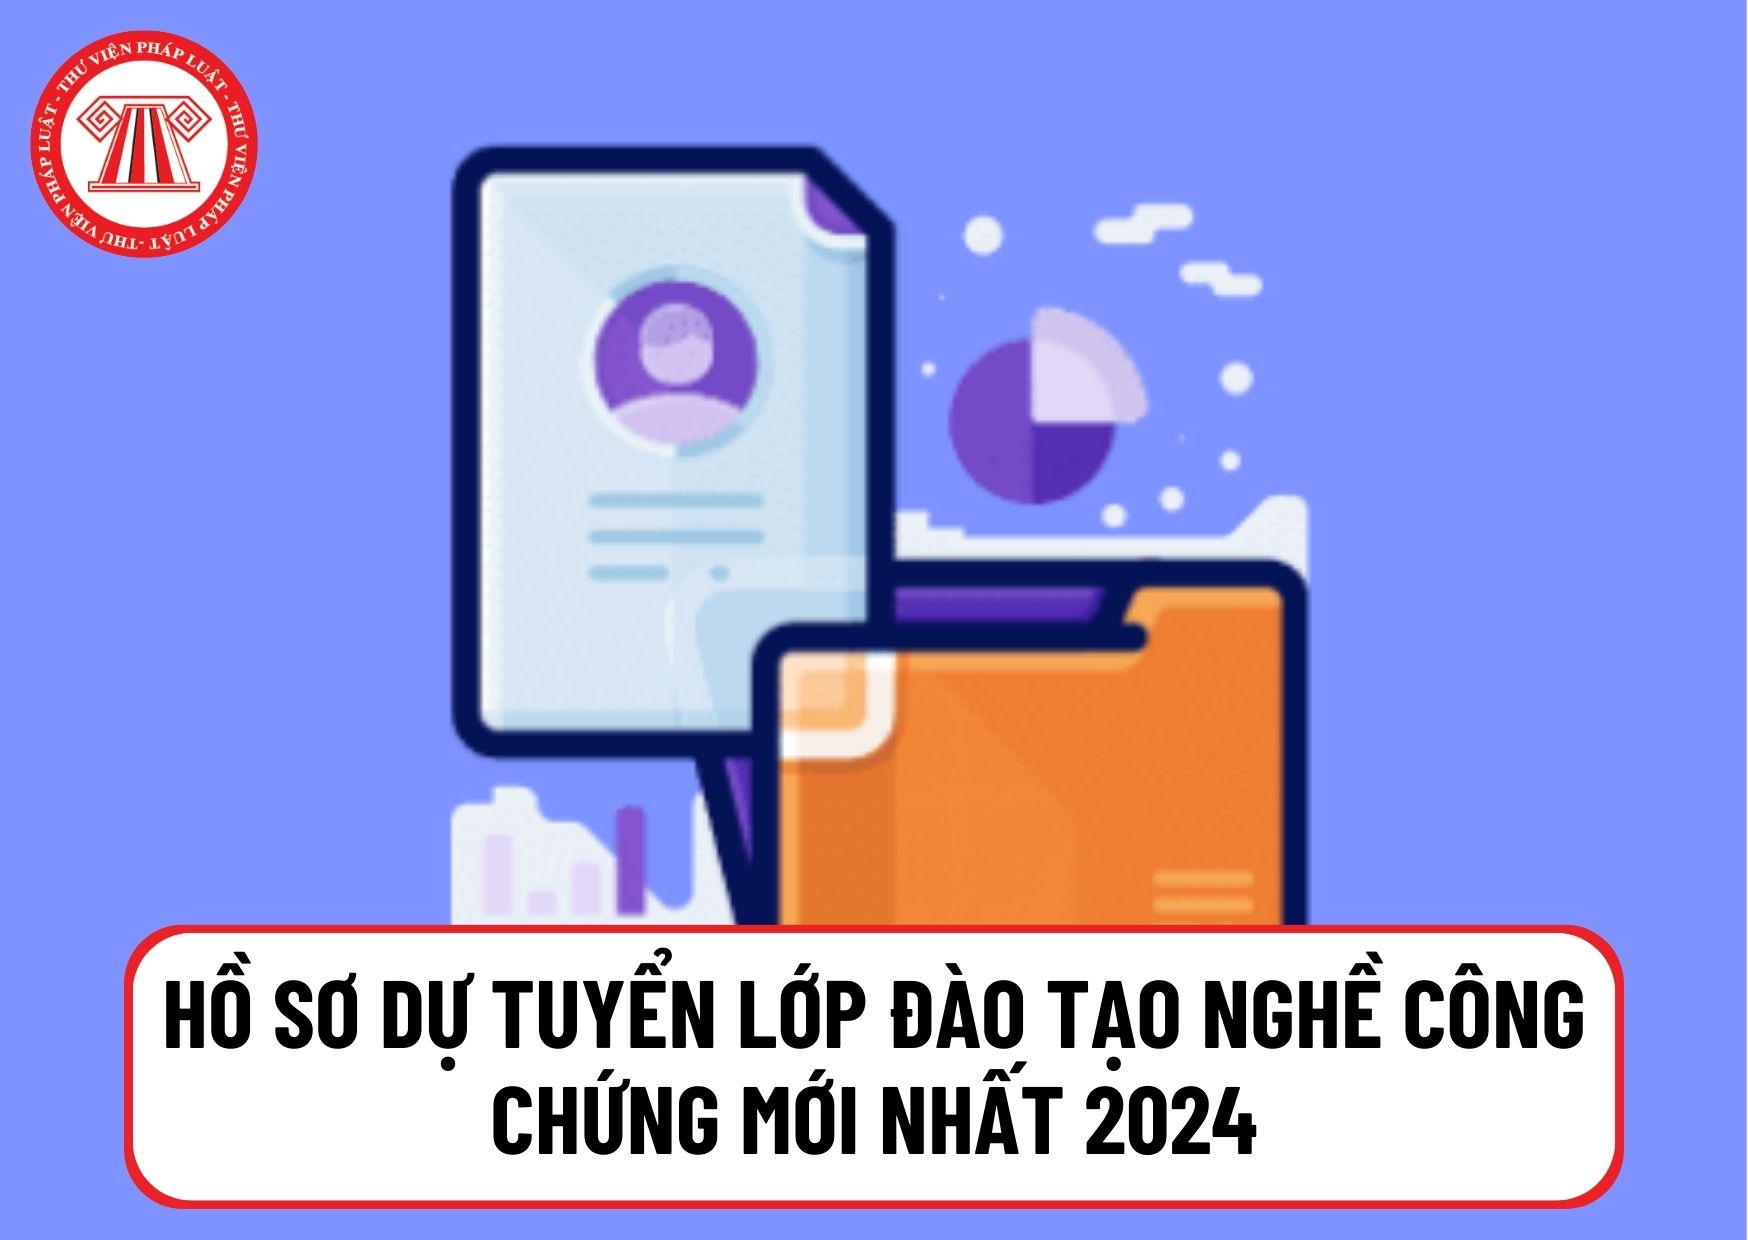 Hồ sơ dự tuyển lớp đào tạo nghề công chứng mới nhất 2024 tại TP Hà Nội và TP HCM gồm những gì? 